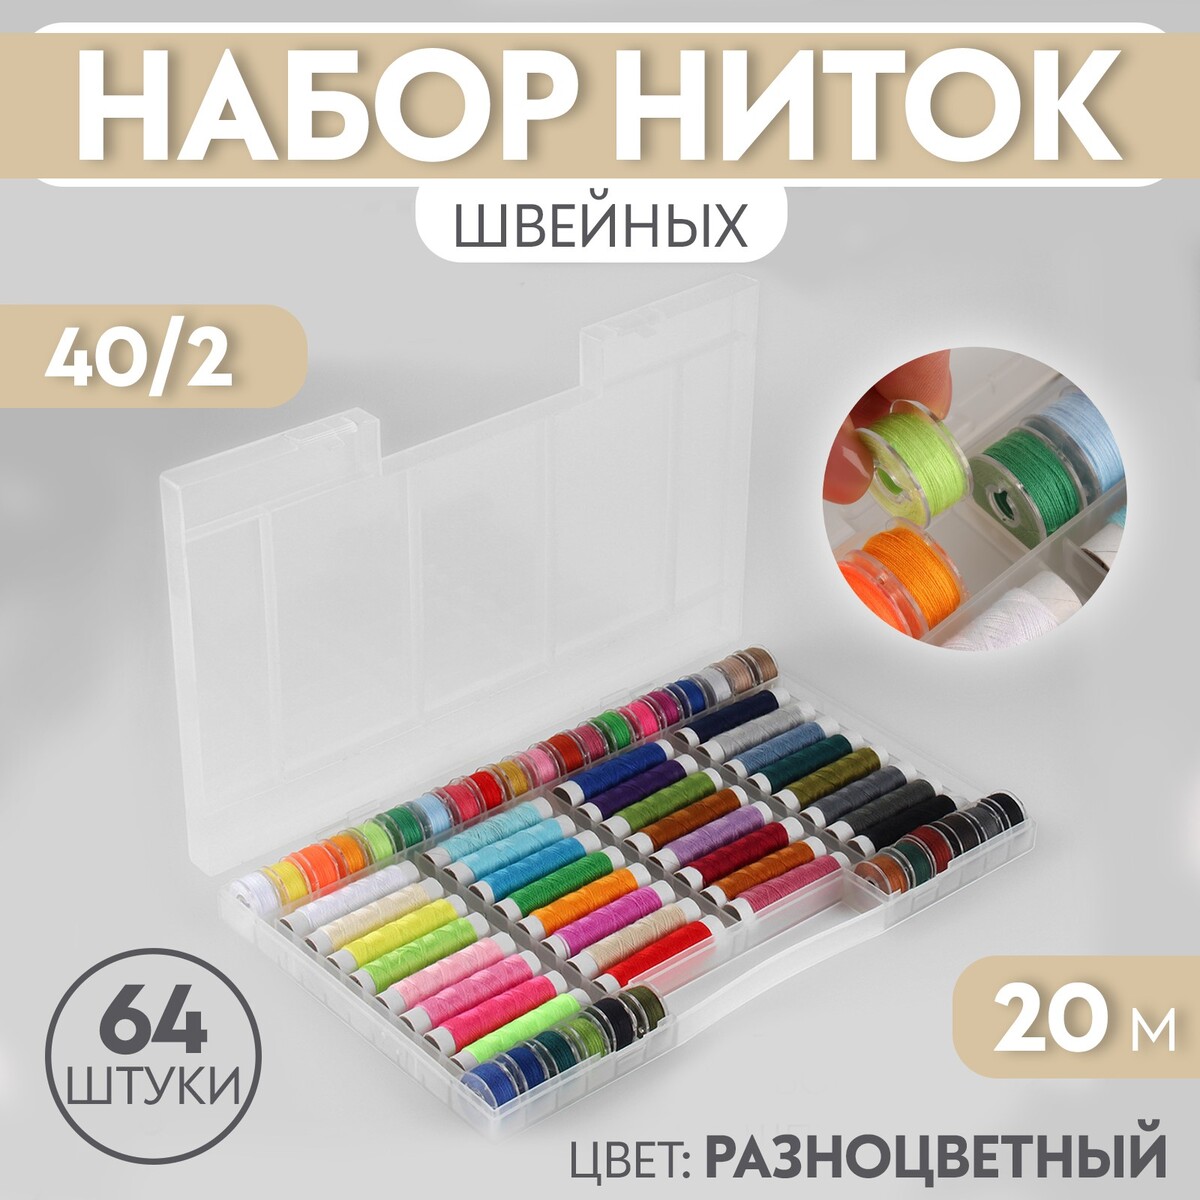 Набор швейных ниток, 40/2, 20 м, 64 шт, в органайзере, цвет разноцветный набор баночек для декора 9 шт в органайзере 40 мл 26 × 13 × 6 см прозрачный